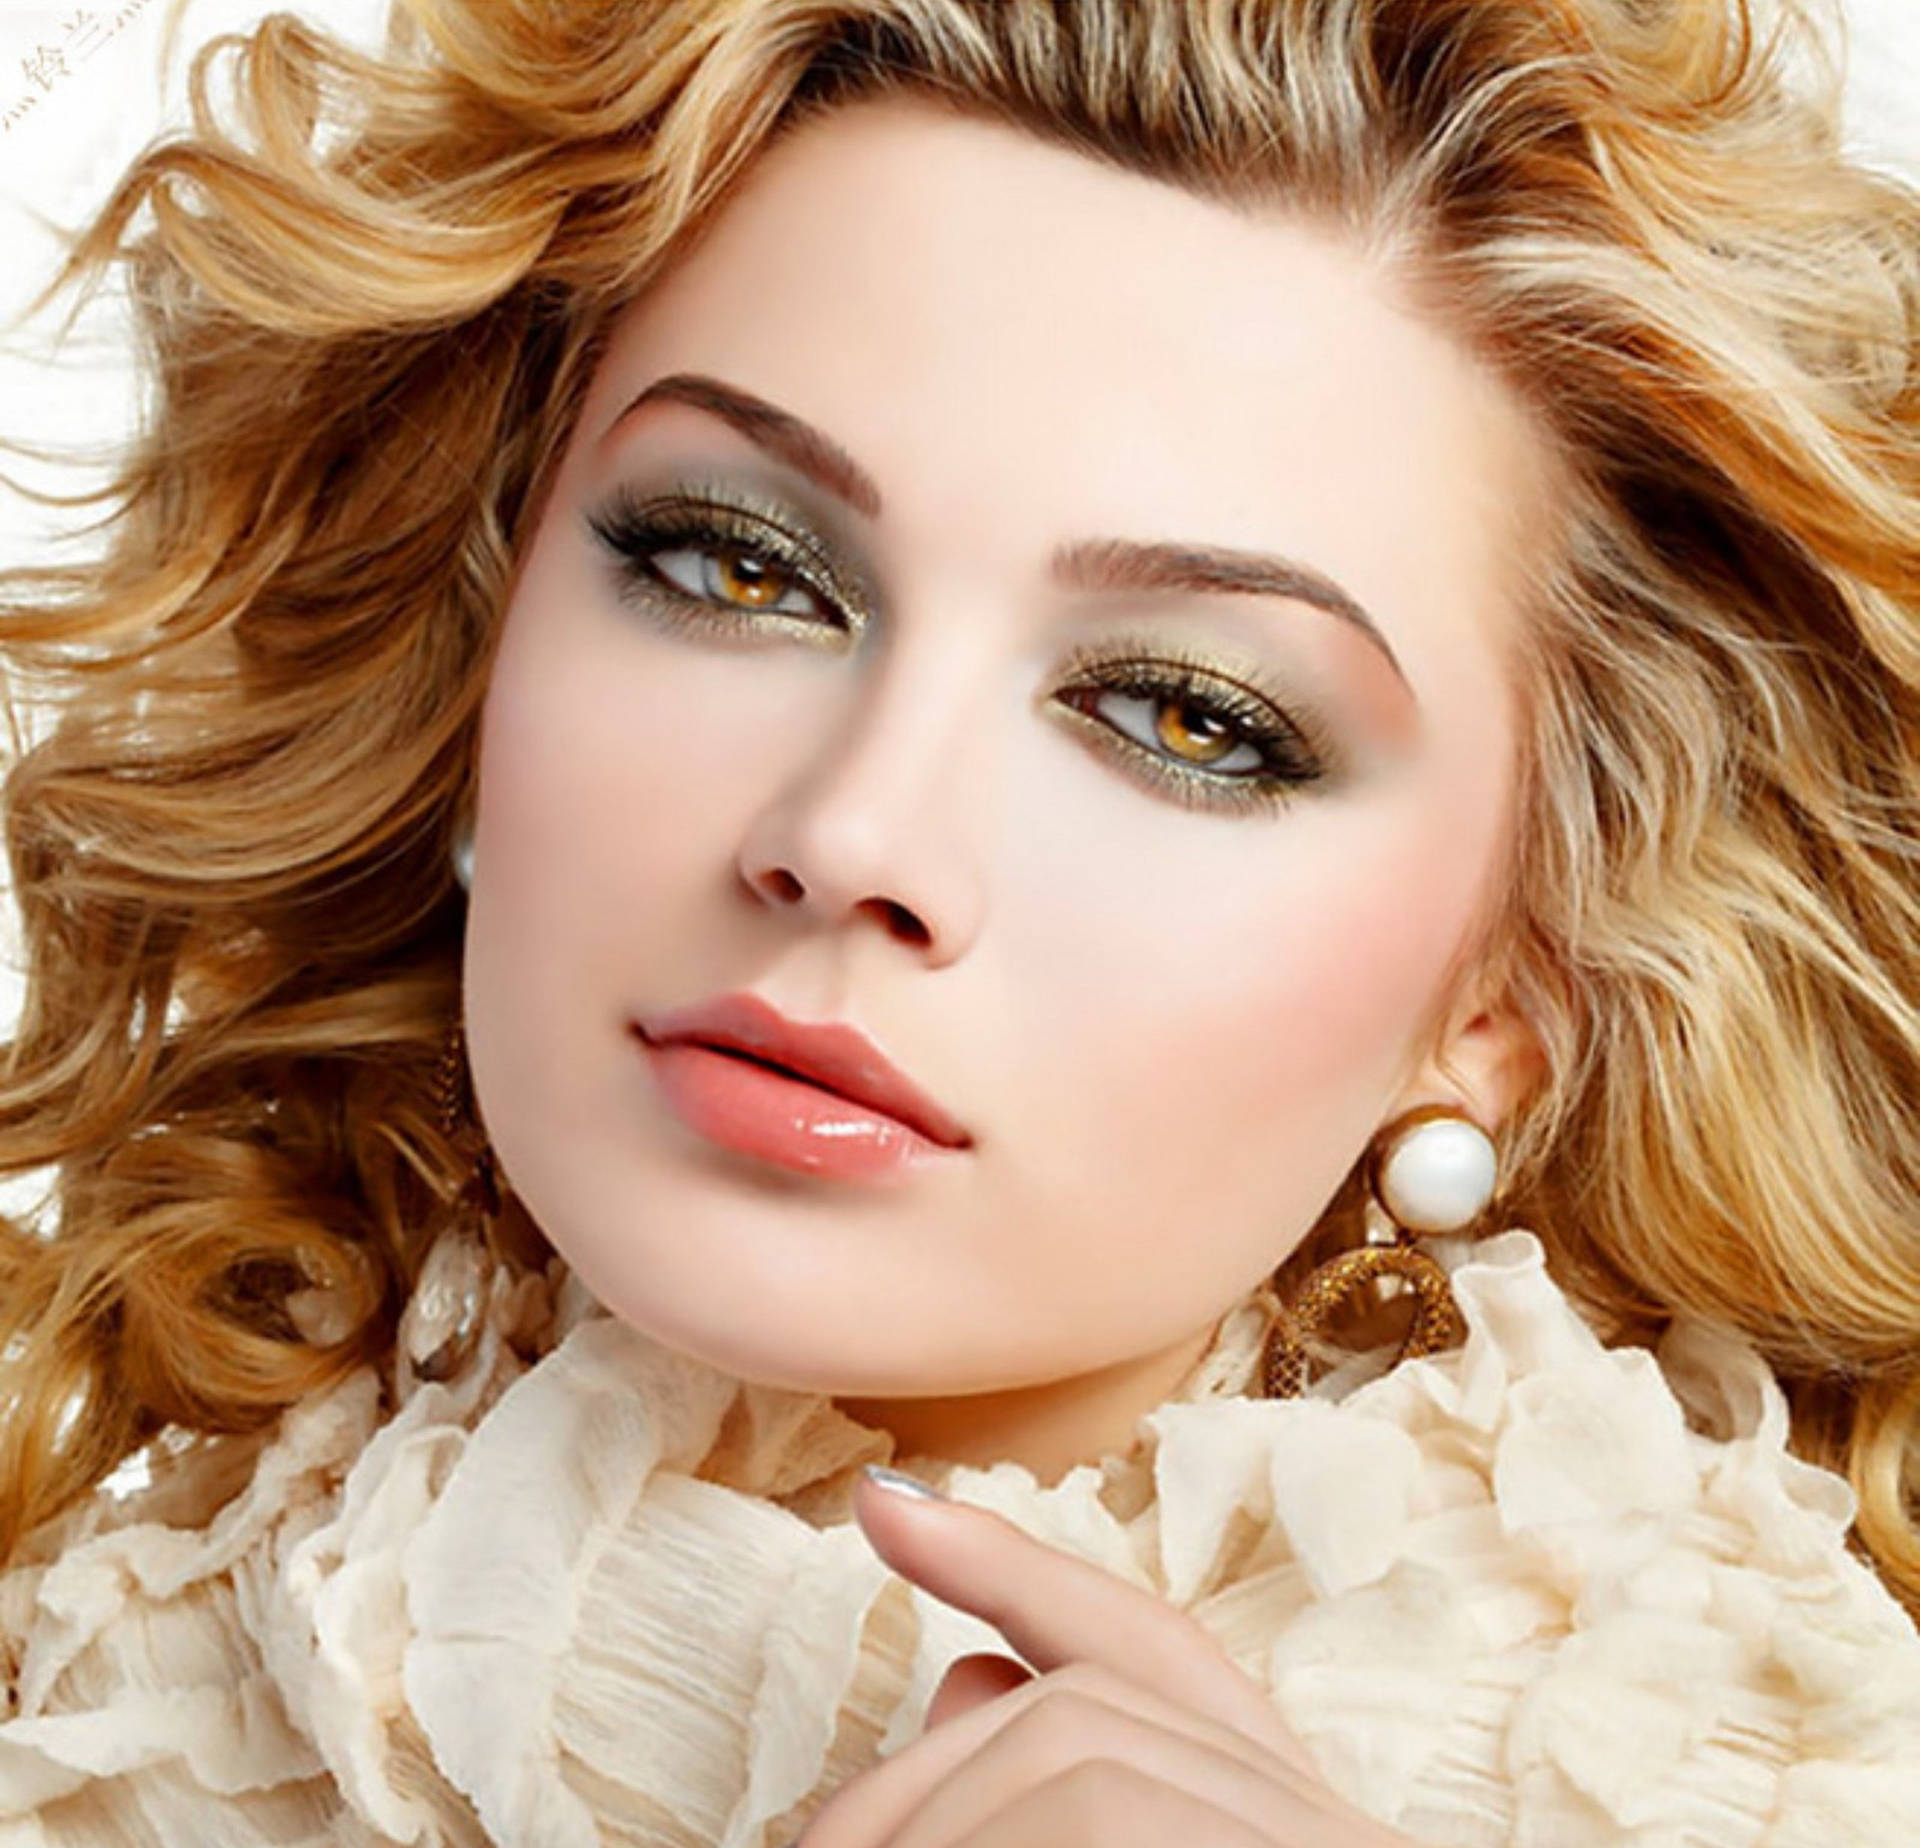 Blonde Female Model Glamour Shot Wallpaper